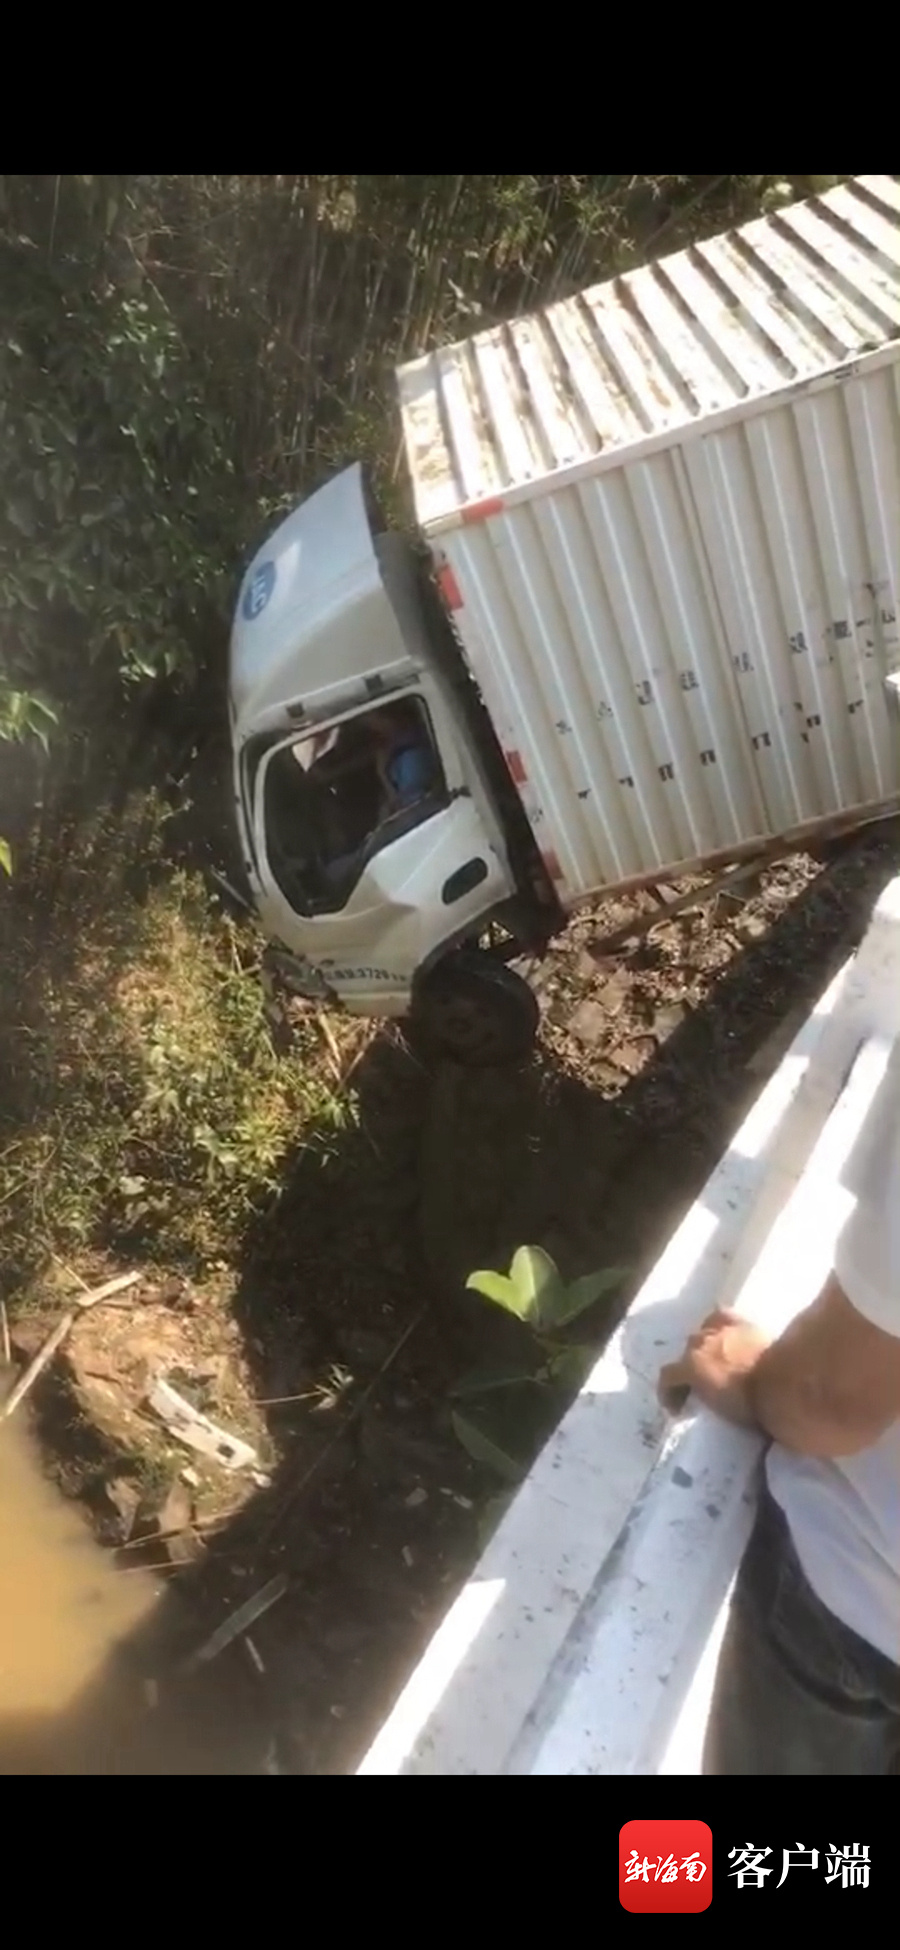 椰视频 | 澄迈一货车因追尾冲出桥外车身悬空 围观群众找来挖掘机救人